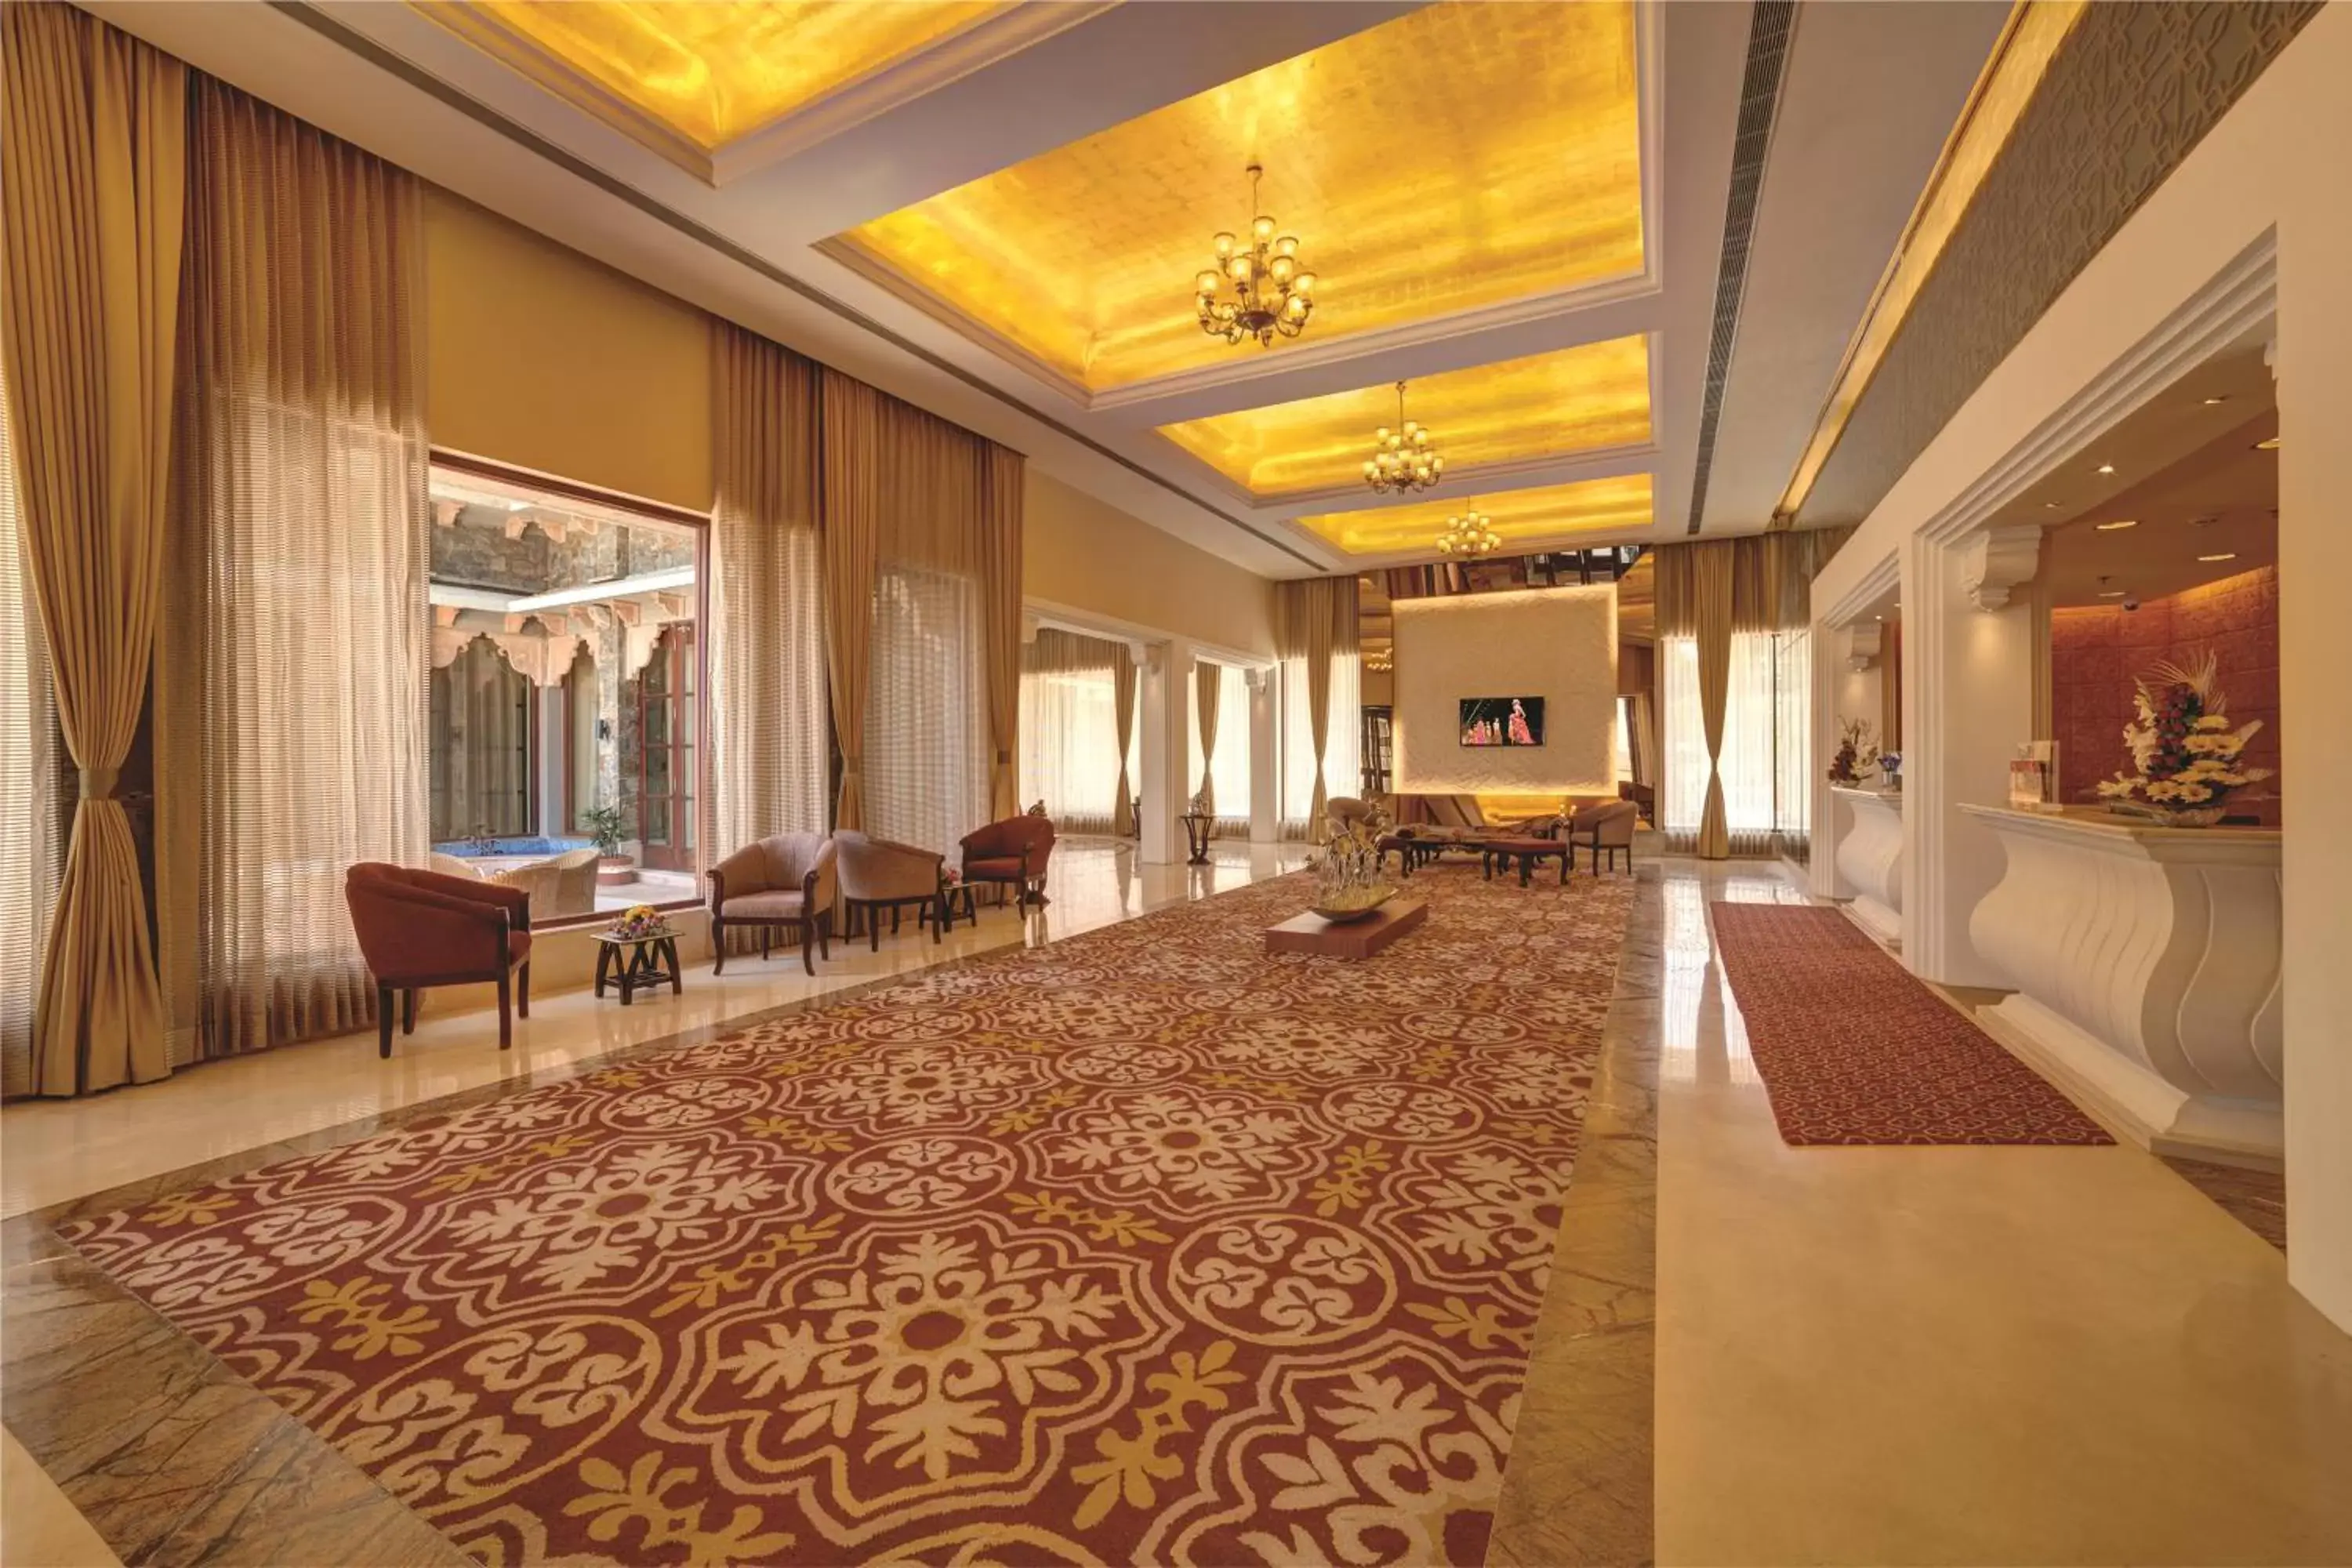 Lobby or reception in Ramada Udaipur Resort & Spa